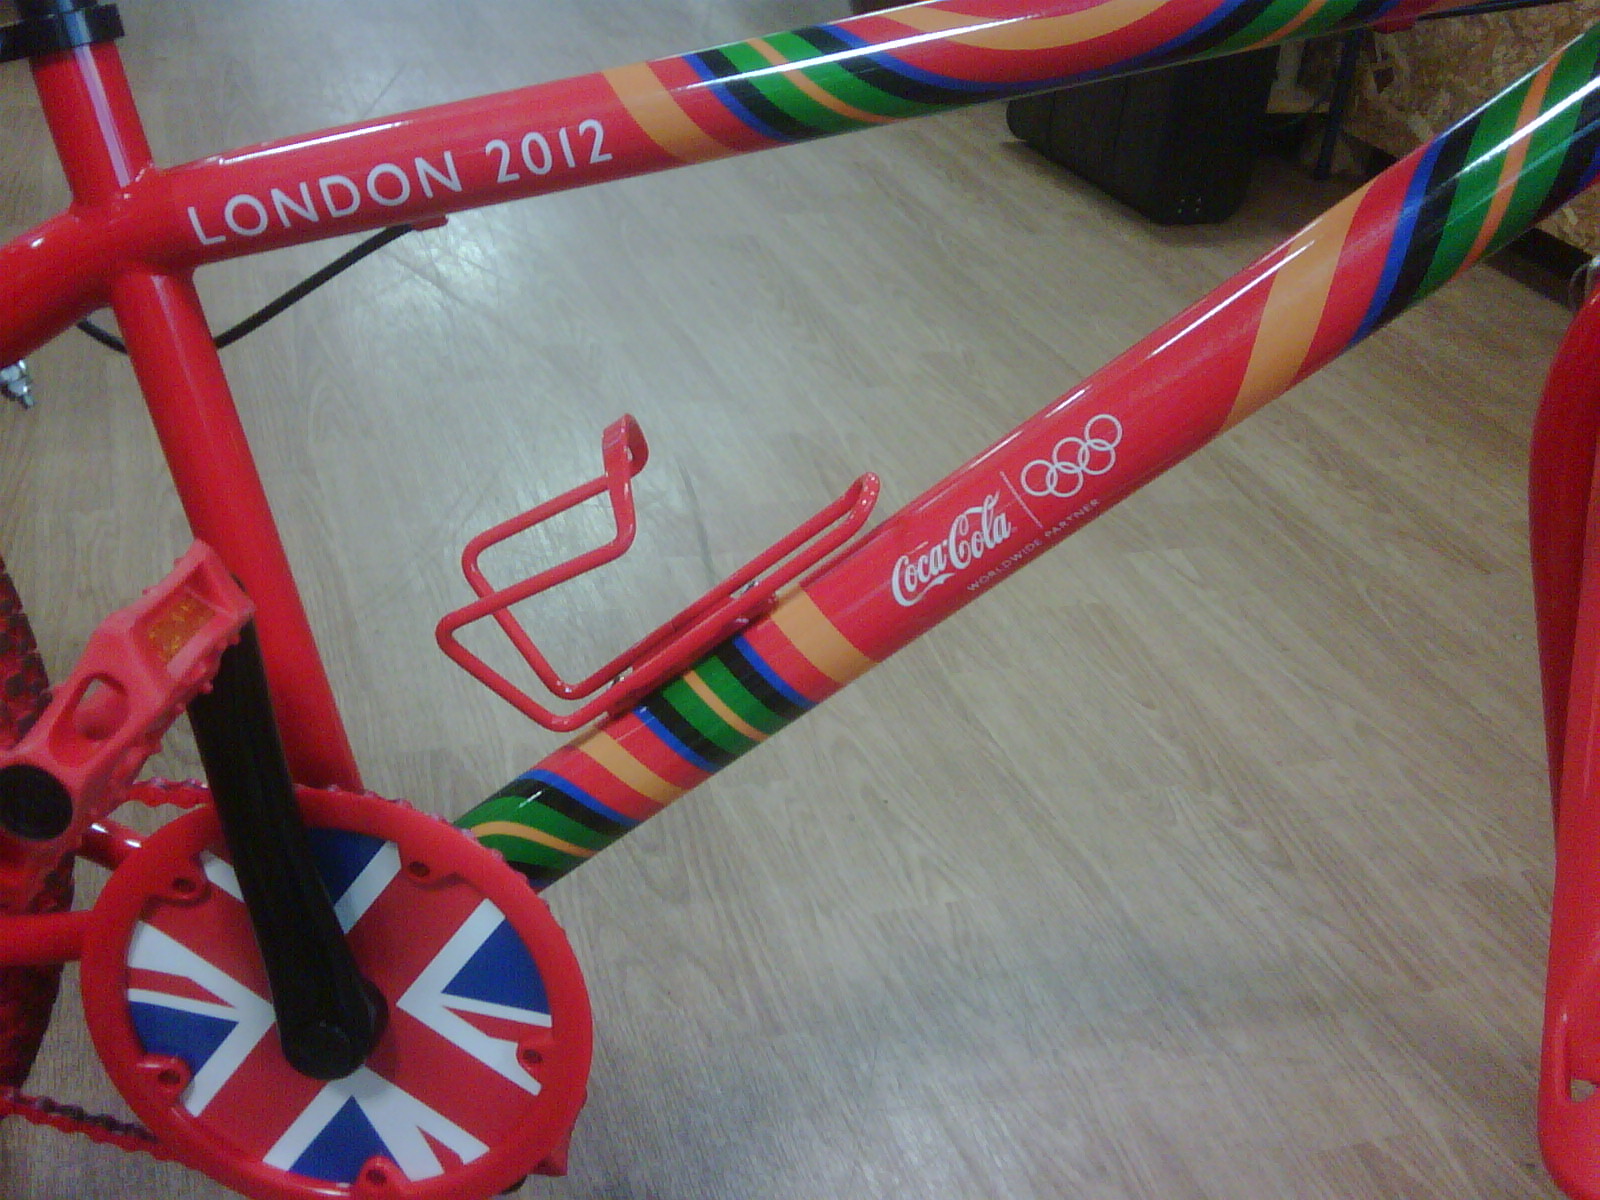 ロンドンオリンピック2012モデル コカコーラ マウンテンバイク、入荷